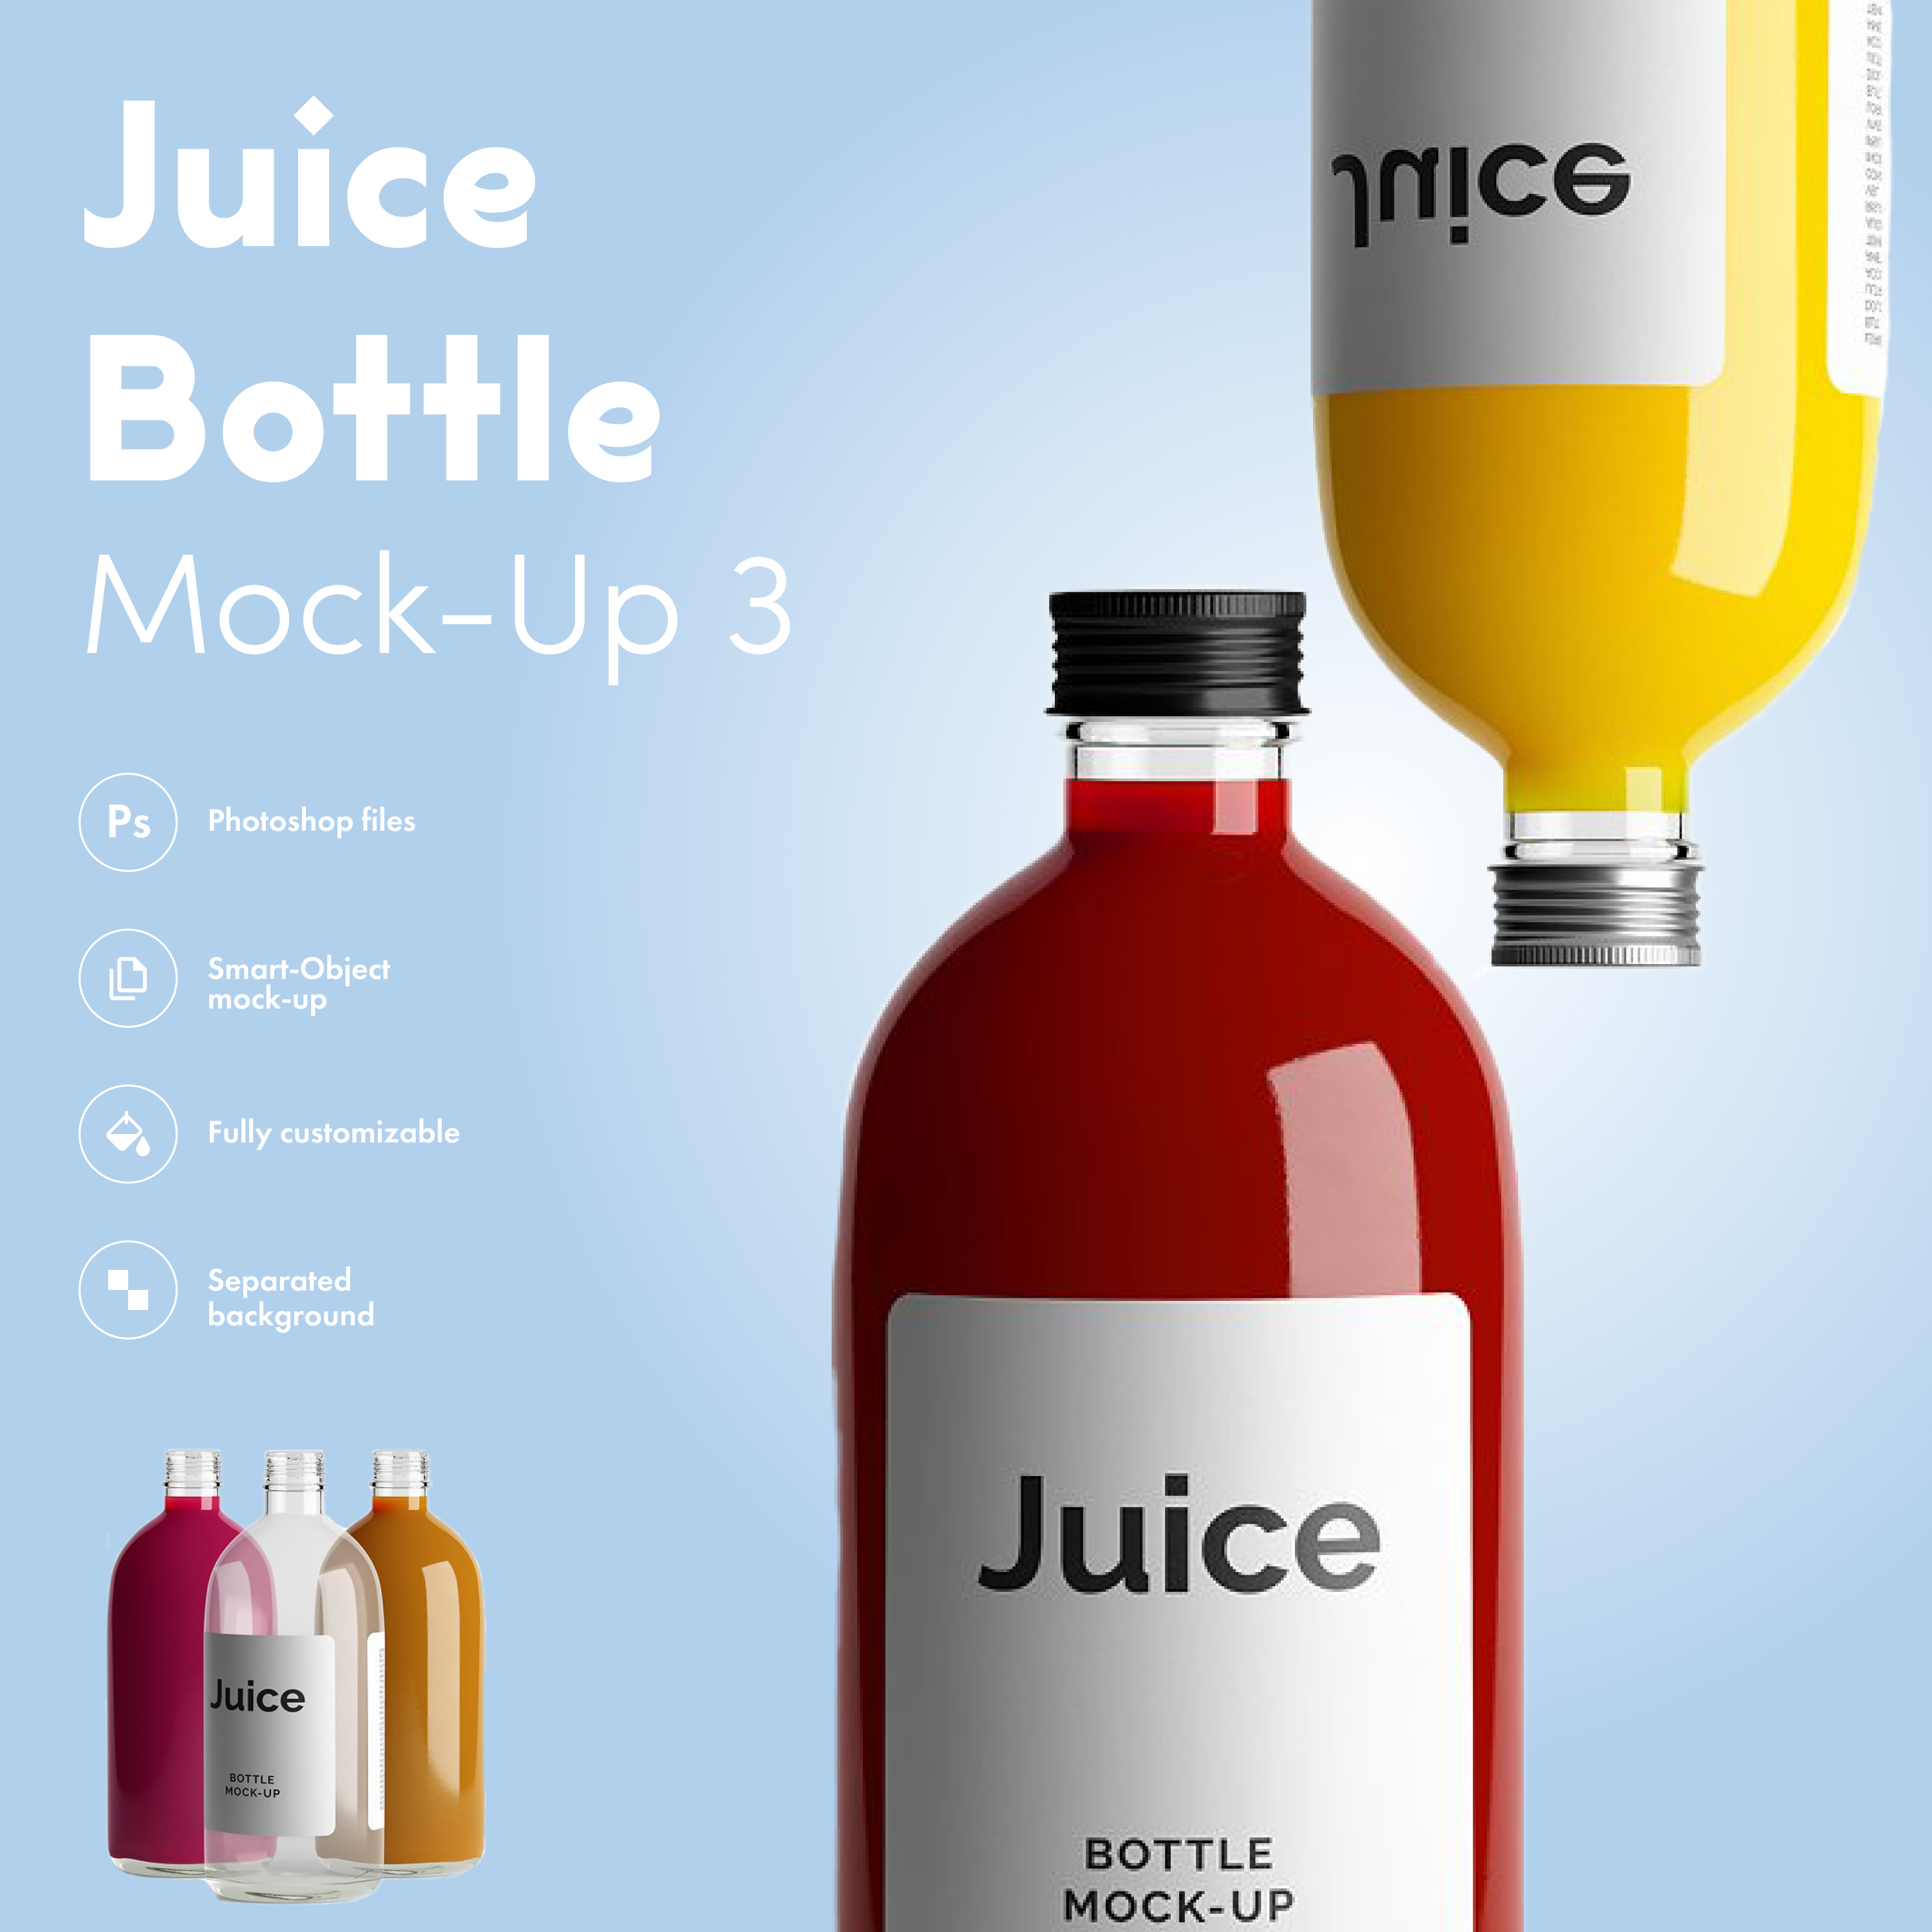 Juice bottle mock up 3 preview.